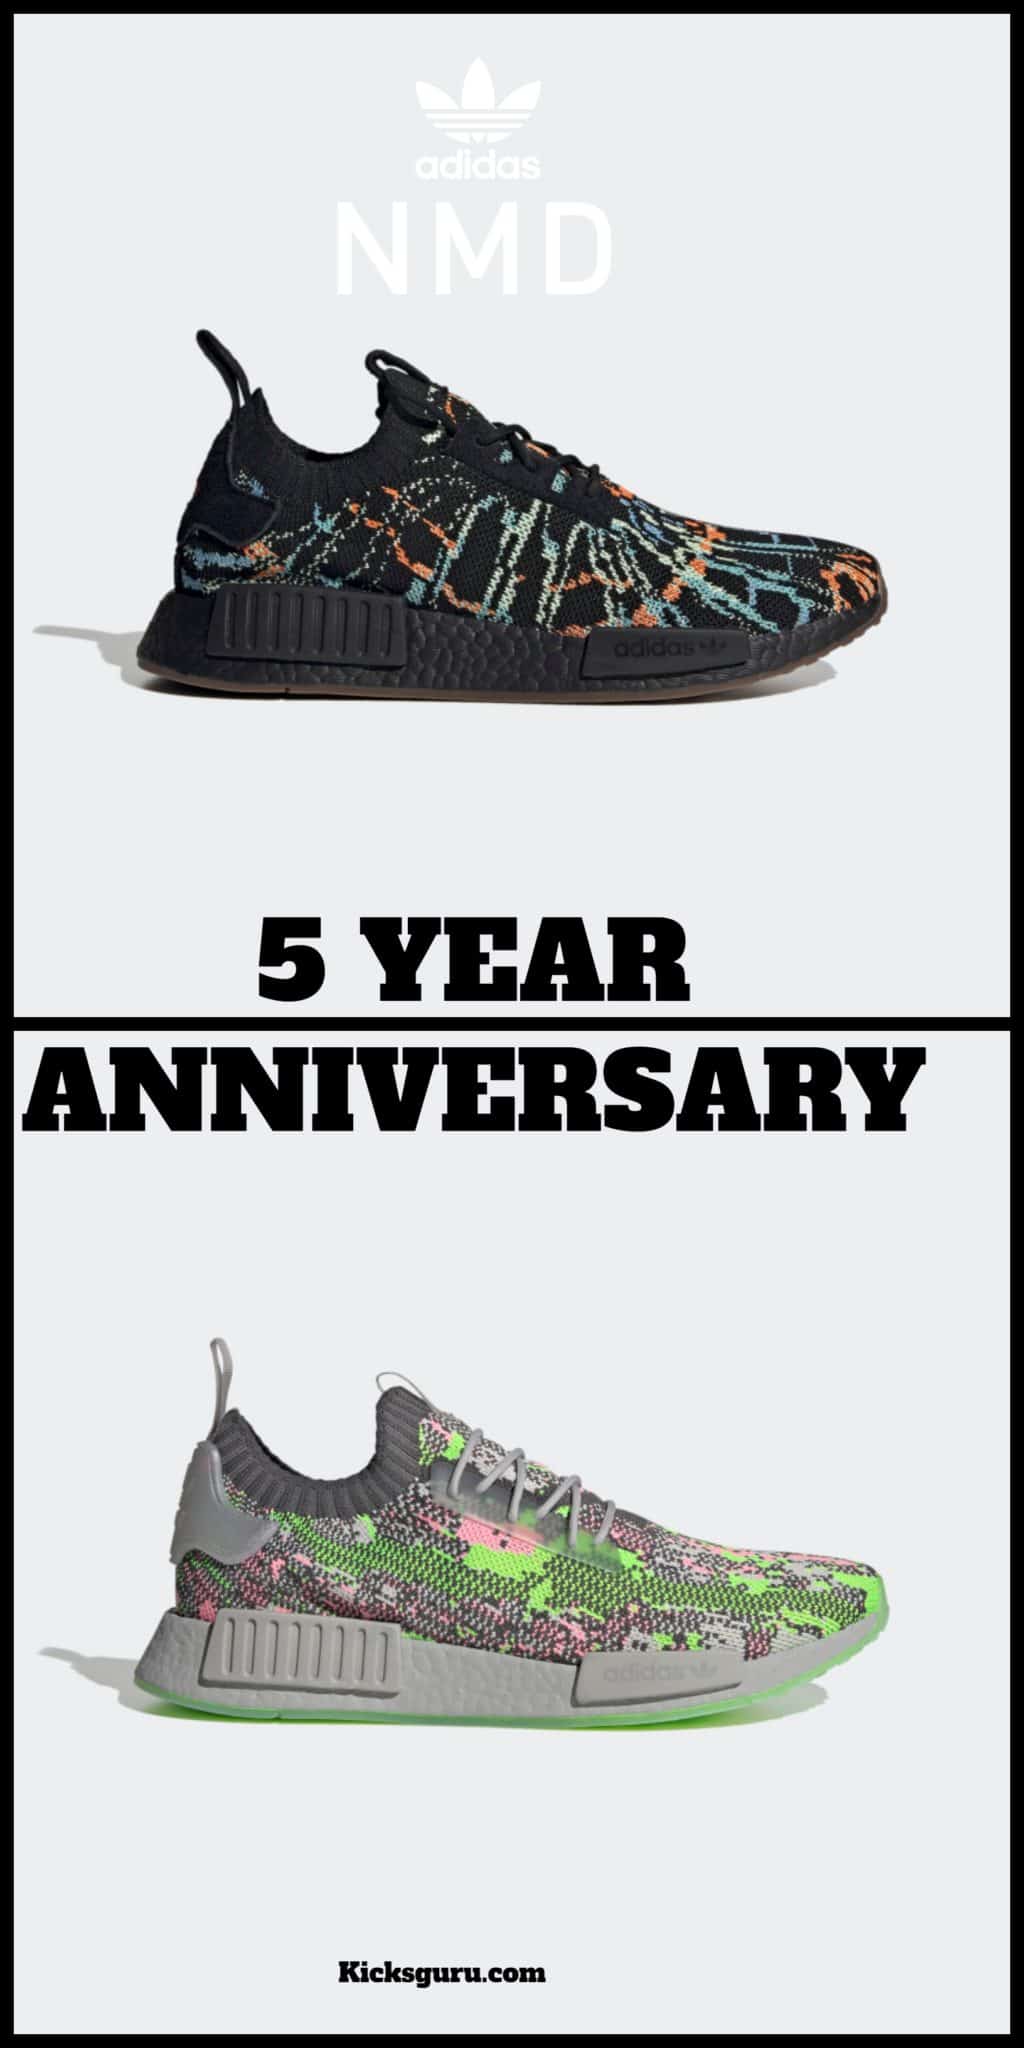 Adidas NMD 5 year anniversary